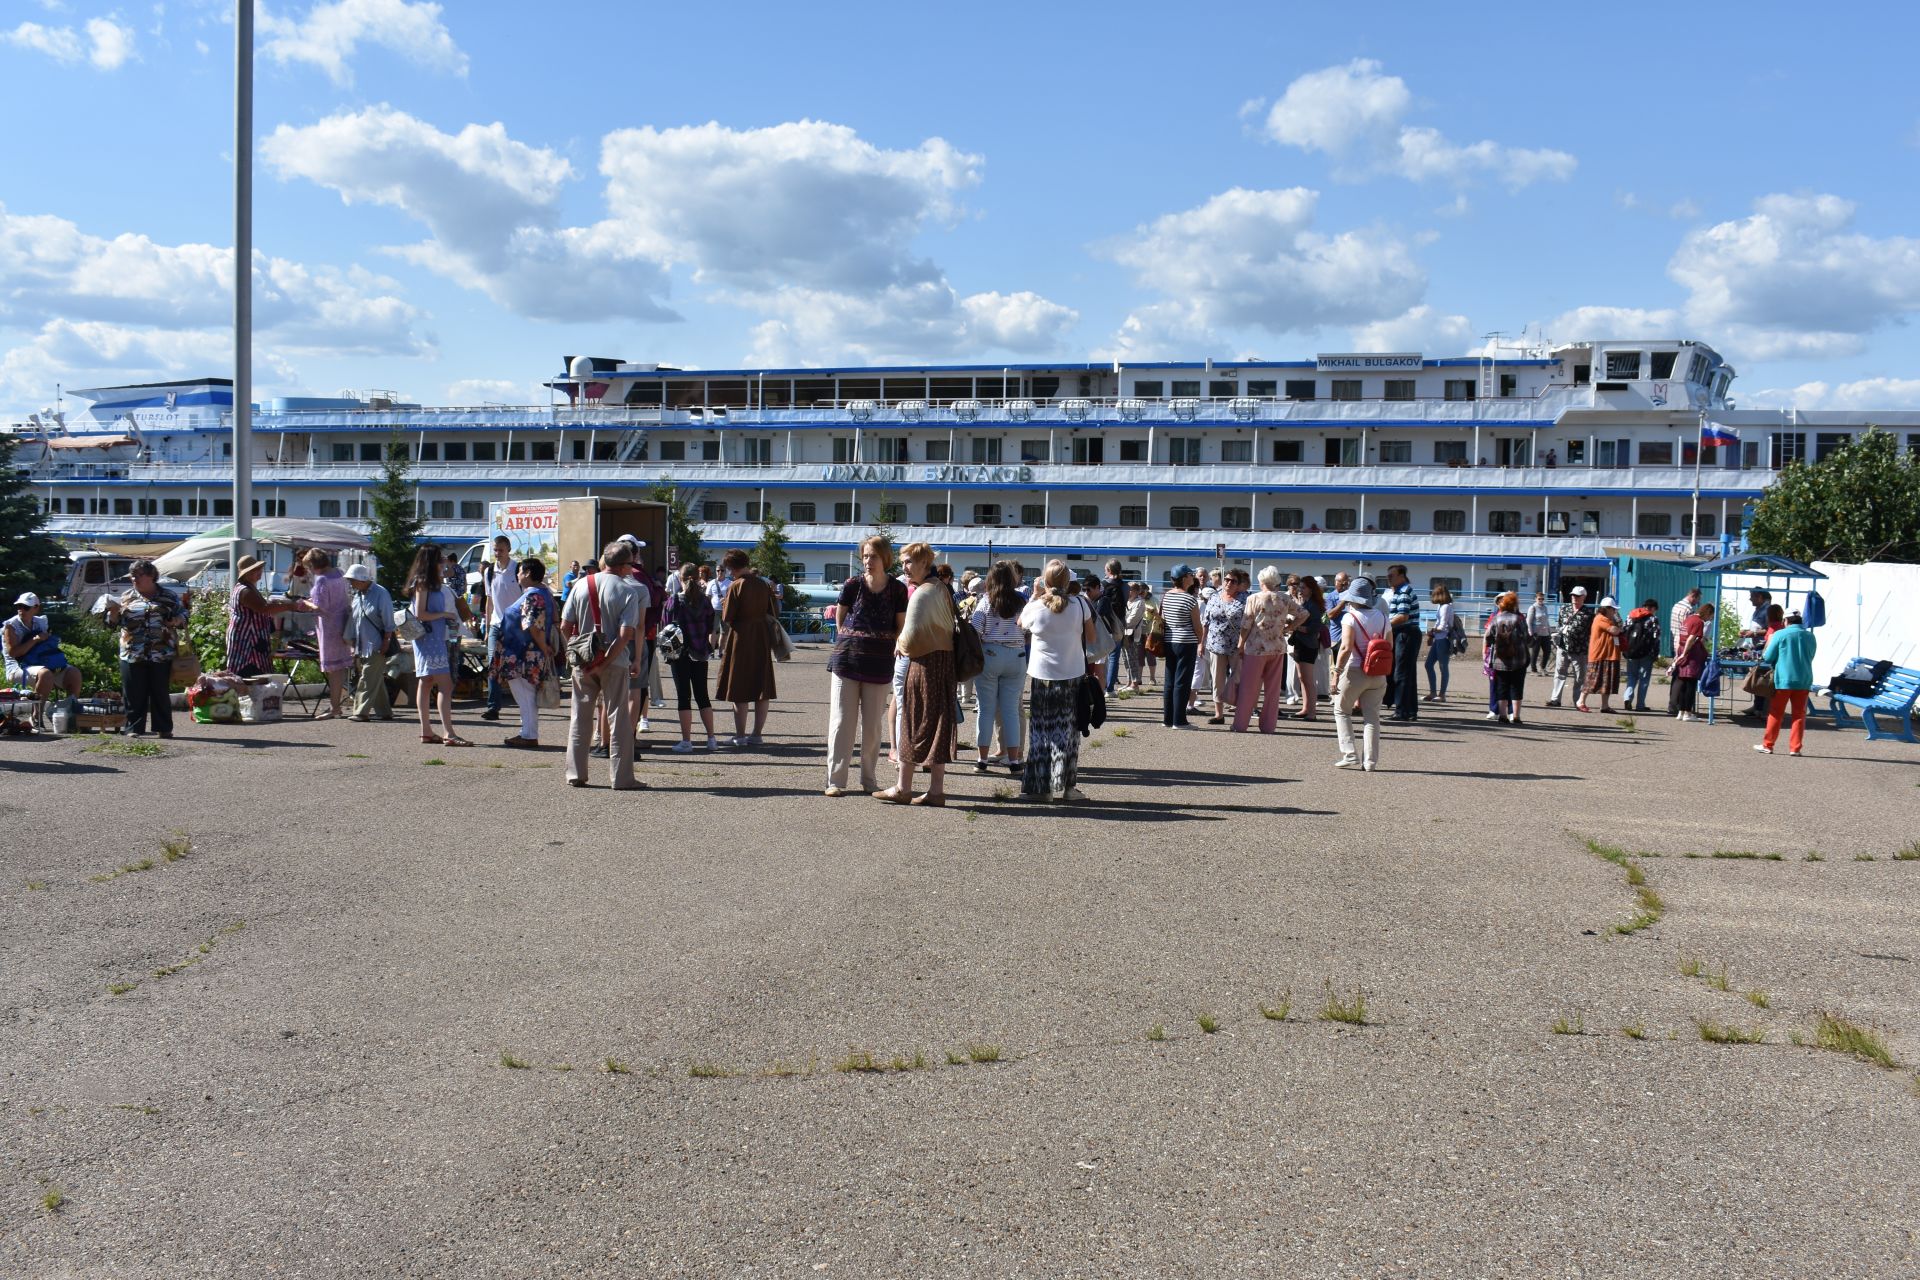 За день Чистополь принял почти 1000 туристов!